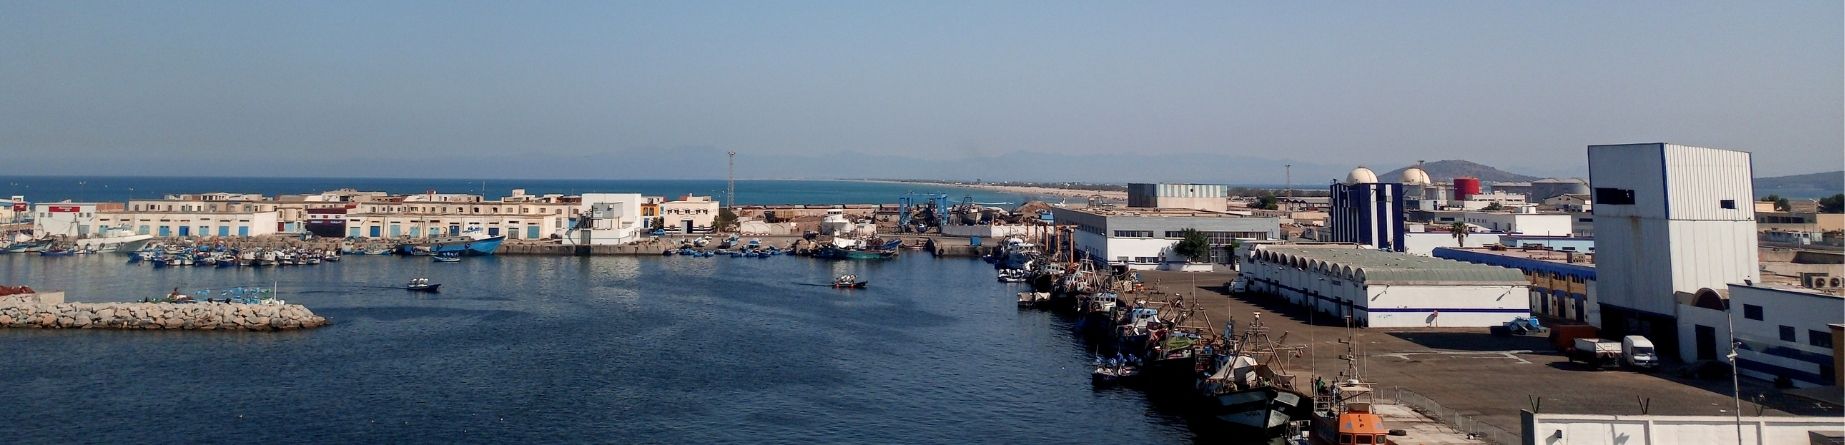 Imagen recurso del puerto de destino Nador para la ruta en ferry Sete - Nador